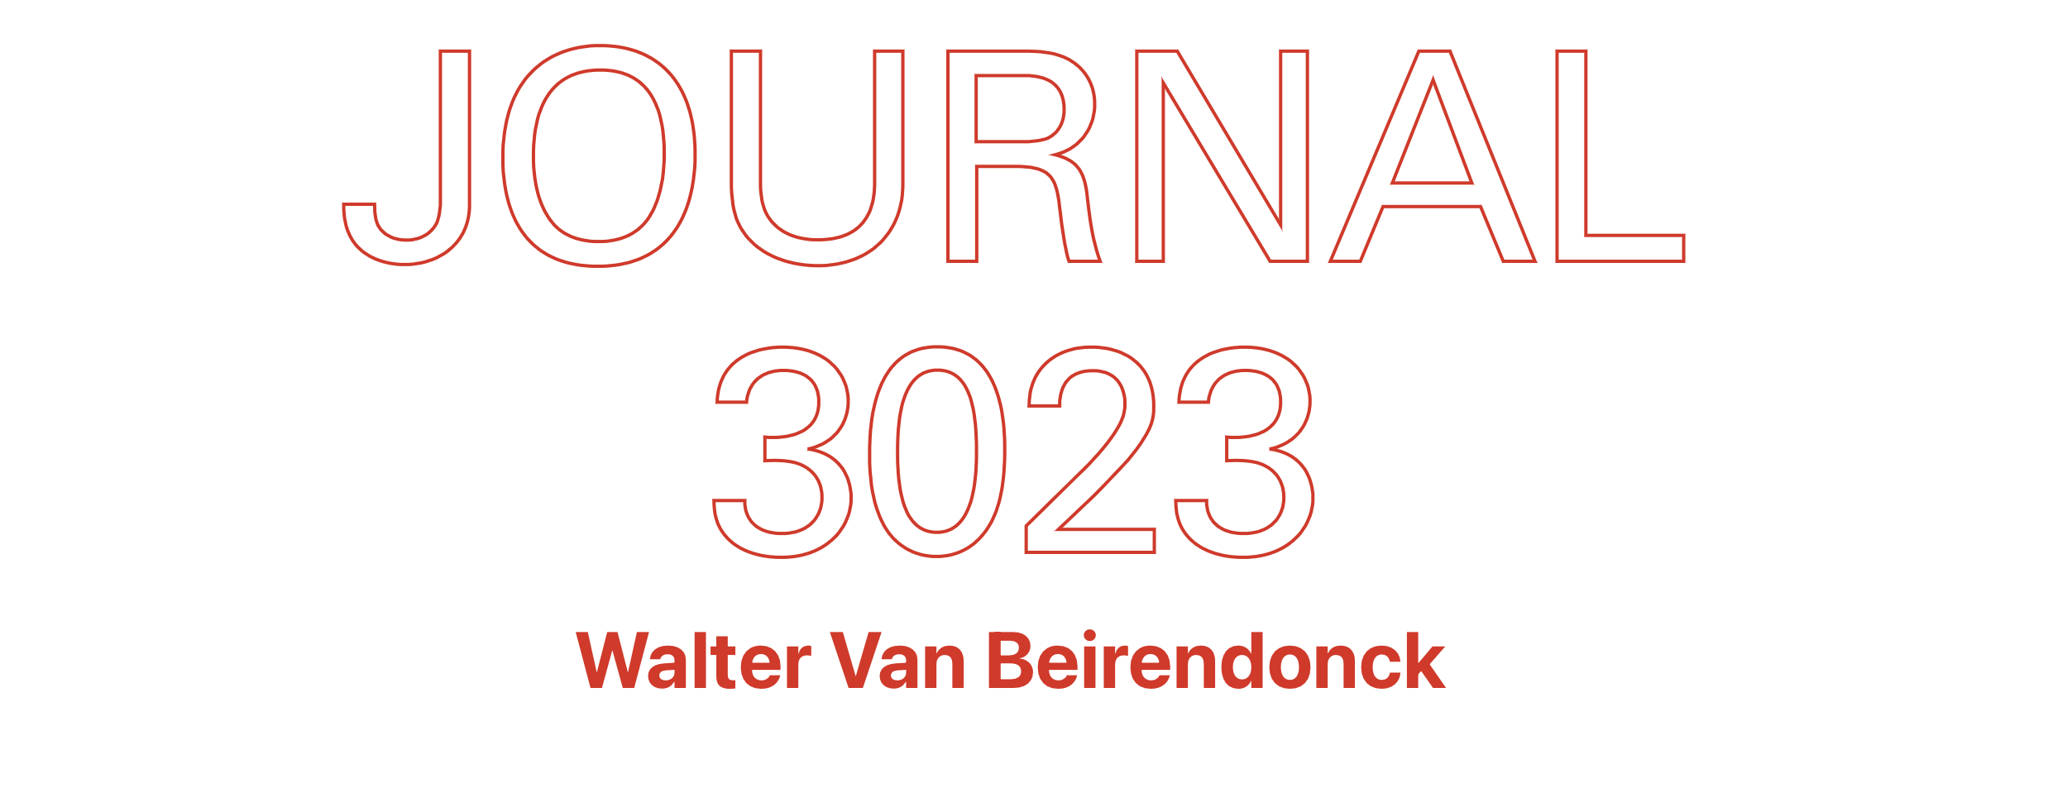 Walter Van Beirendonck WALTER VAN BEIRENDONCK 3023 - THE JOURNAL